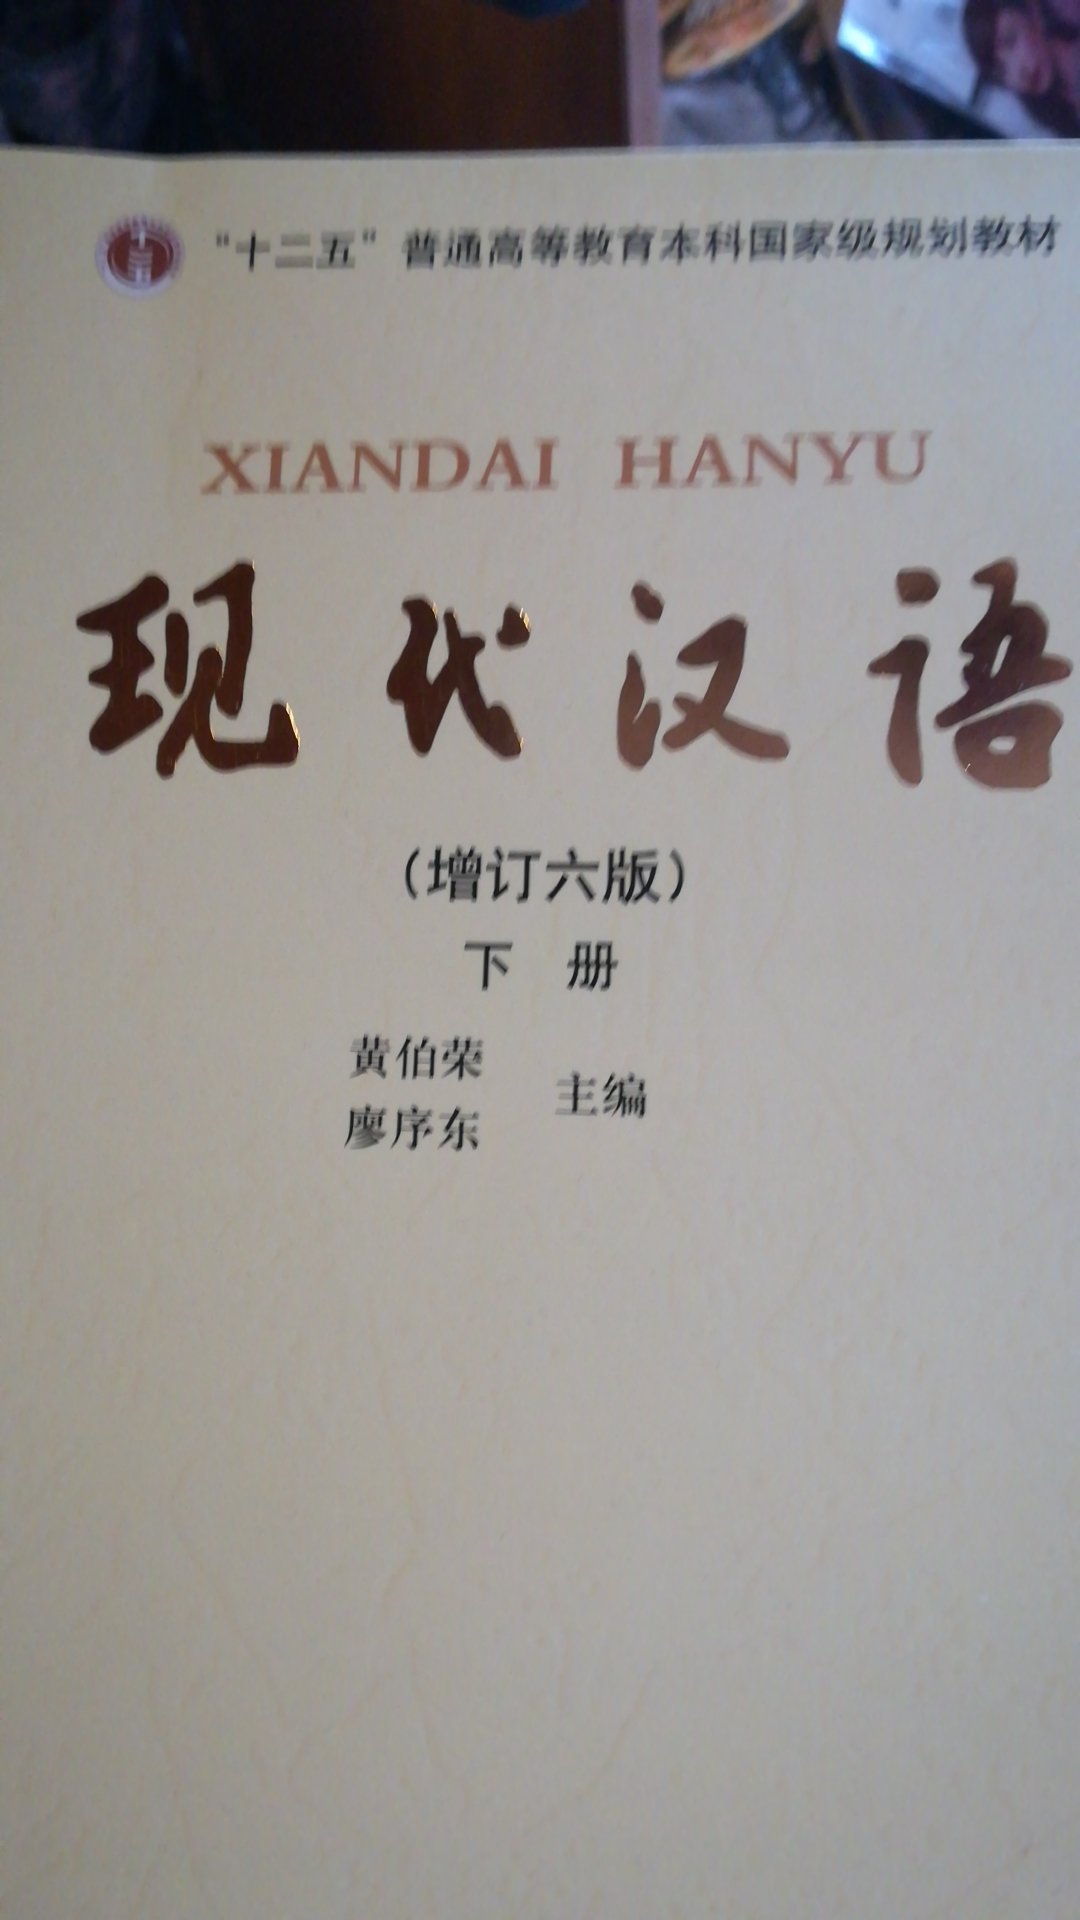 黄廖版的现代汉语是中文系的必读书之一啊！内容很棒！